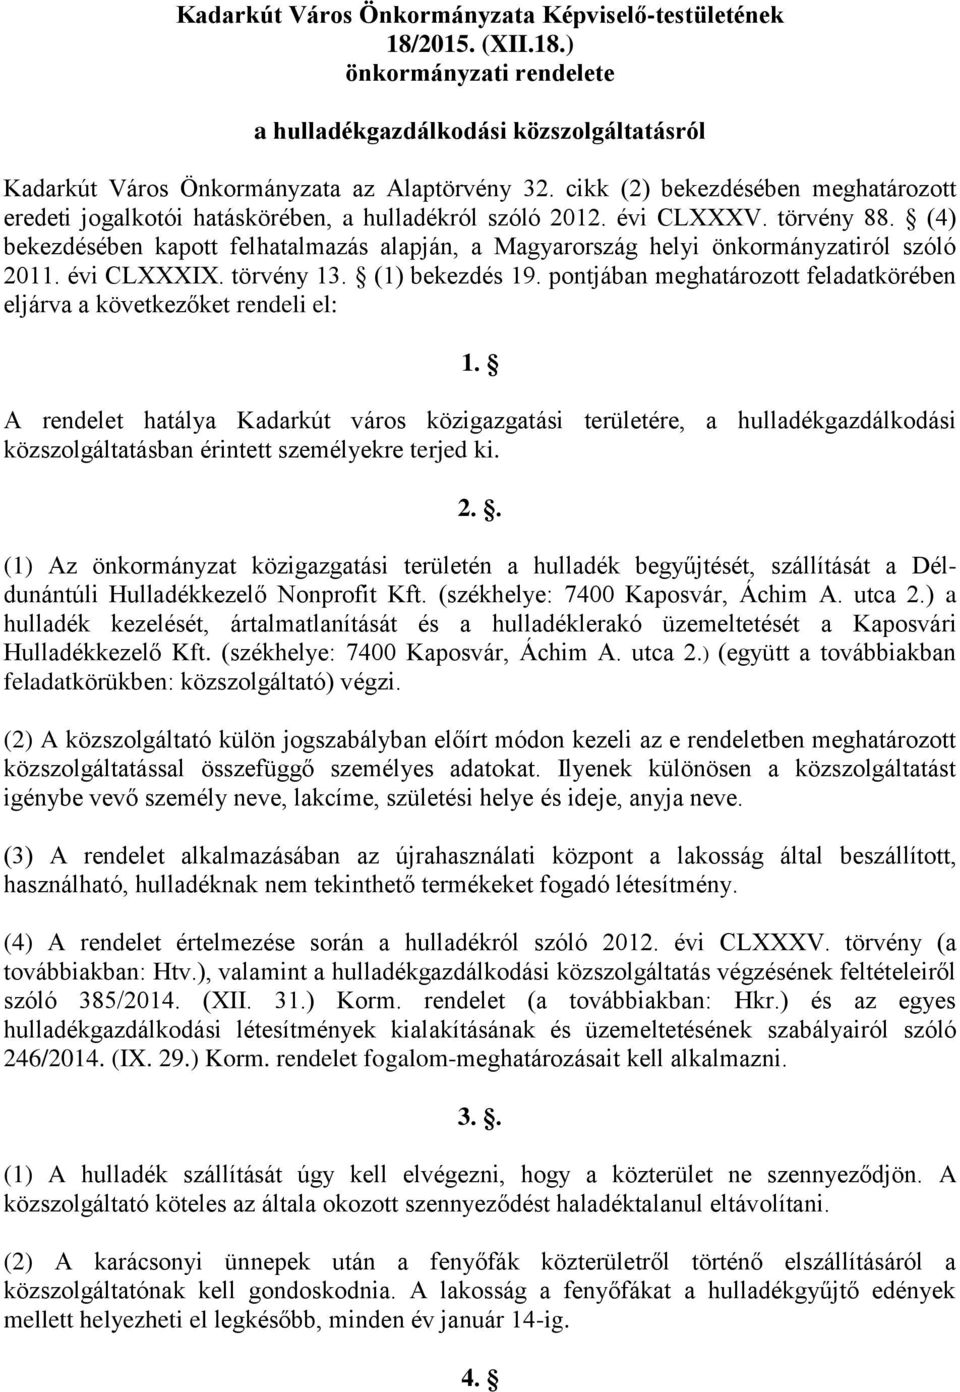 (4) bekezdésében kapott felhatalmazás alapján, a Magyarország helyi önkormányzatiról szóló 2011. évi CLXXXIX. törvény 13. (1) bekezdés 19.